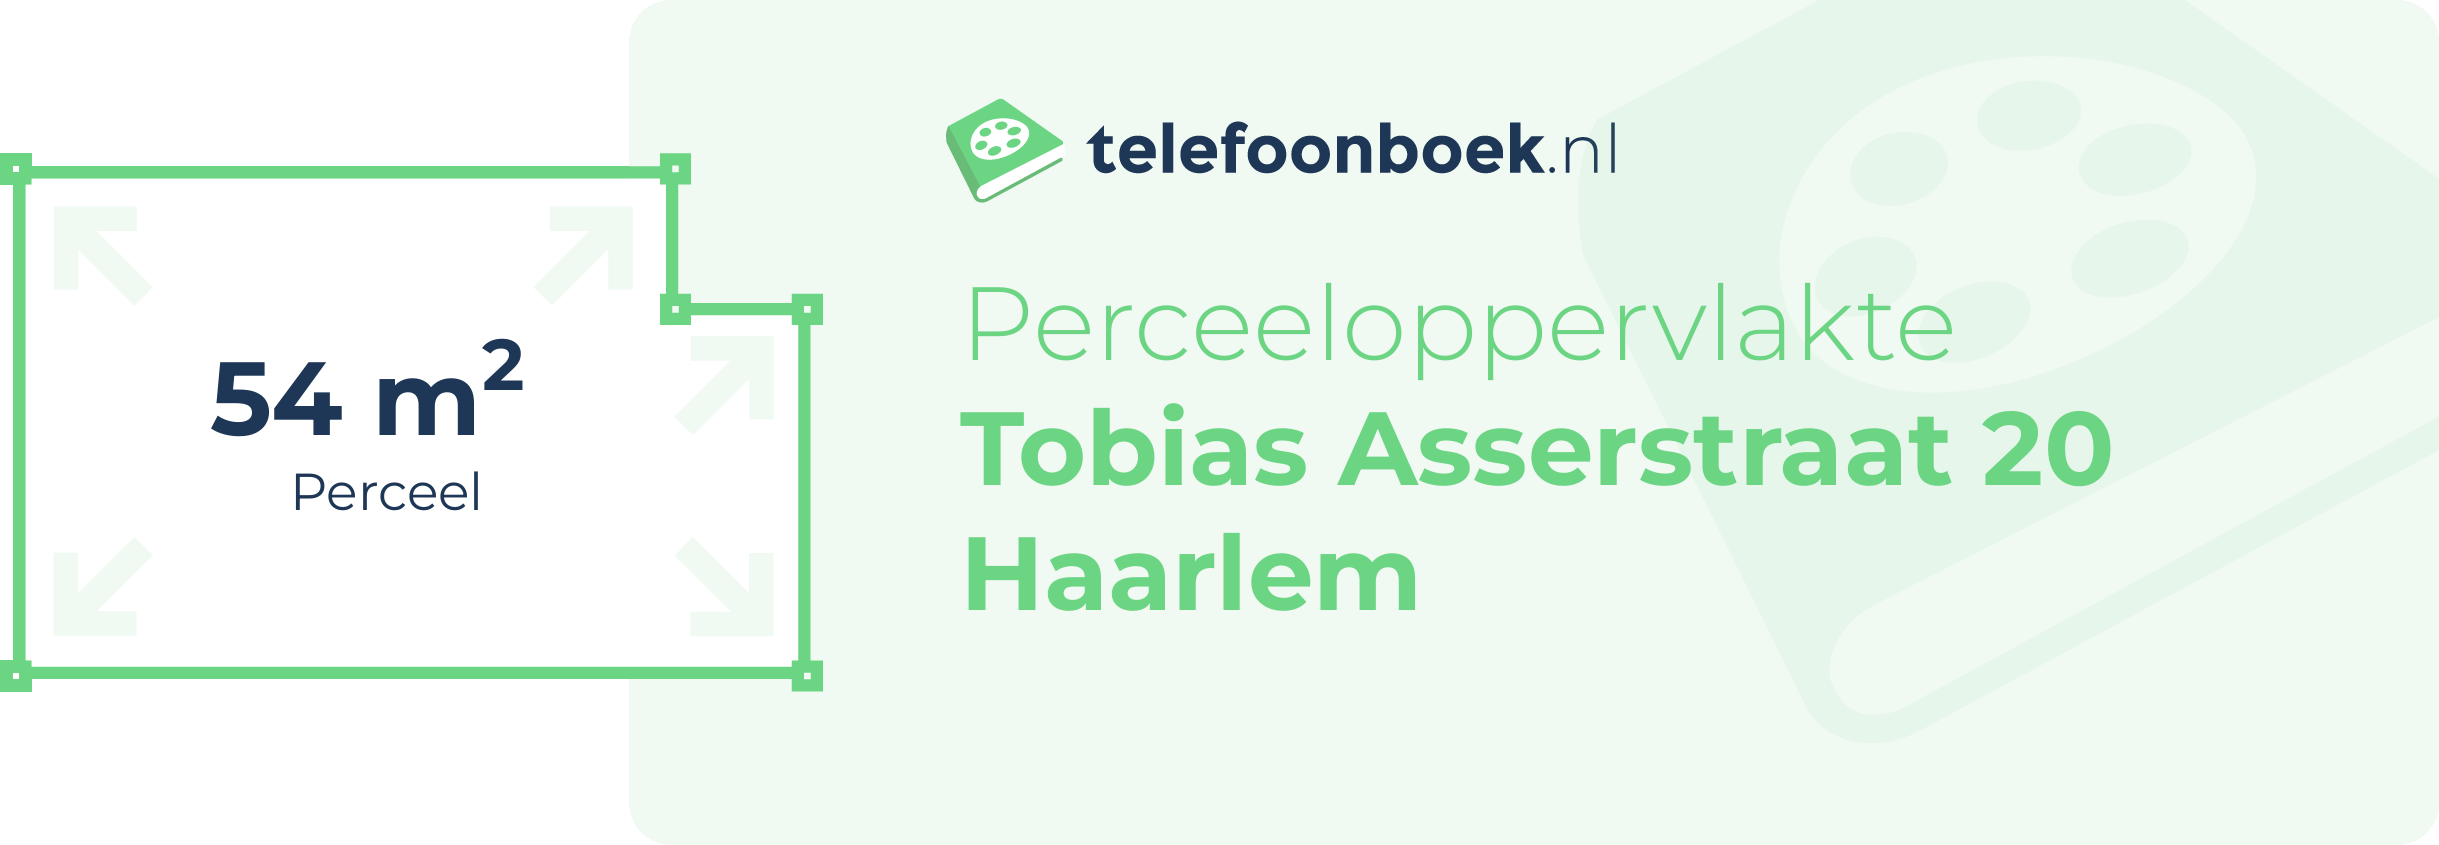 Perceeloppervlakte Tobias Asserstraat 20 Haarlem